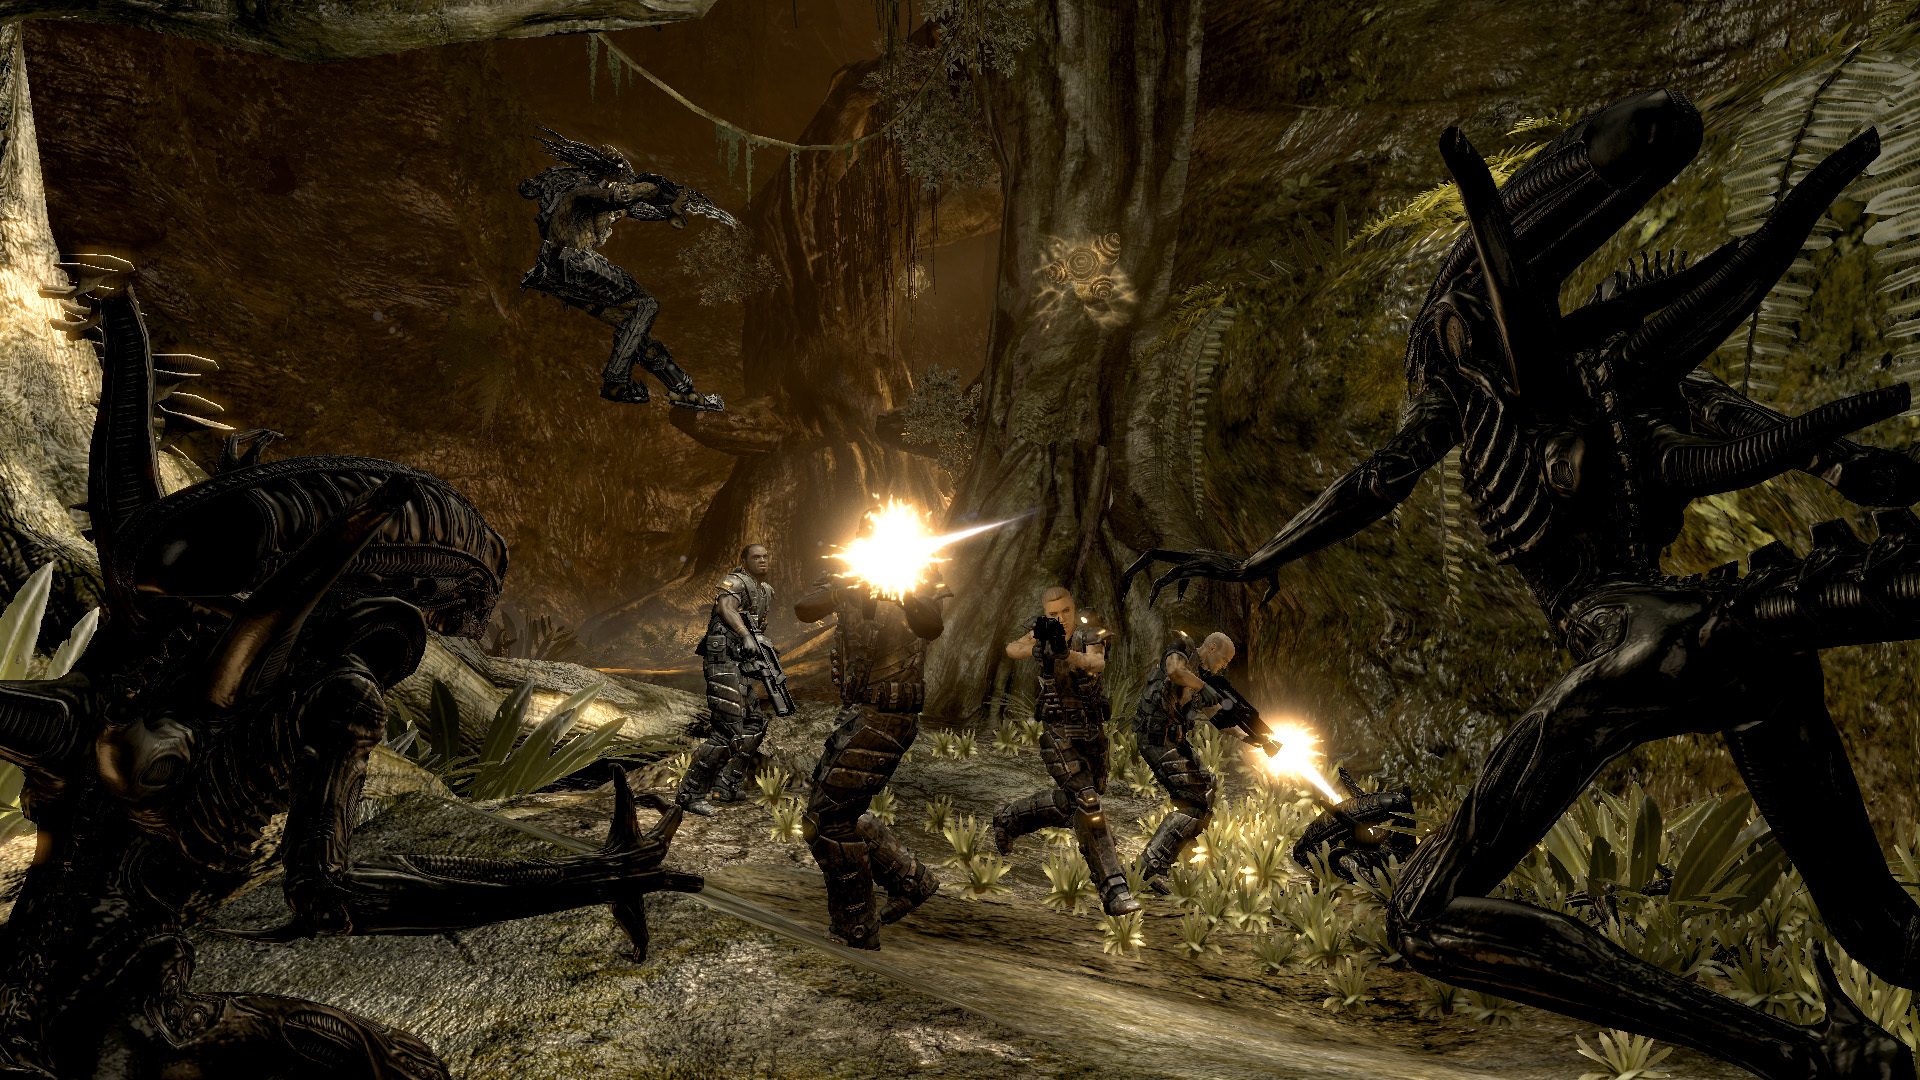 What if: Deathloop's devs made an Aliens vs Predator game?